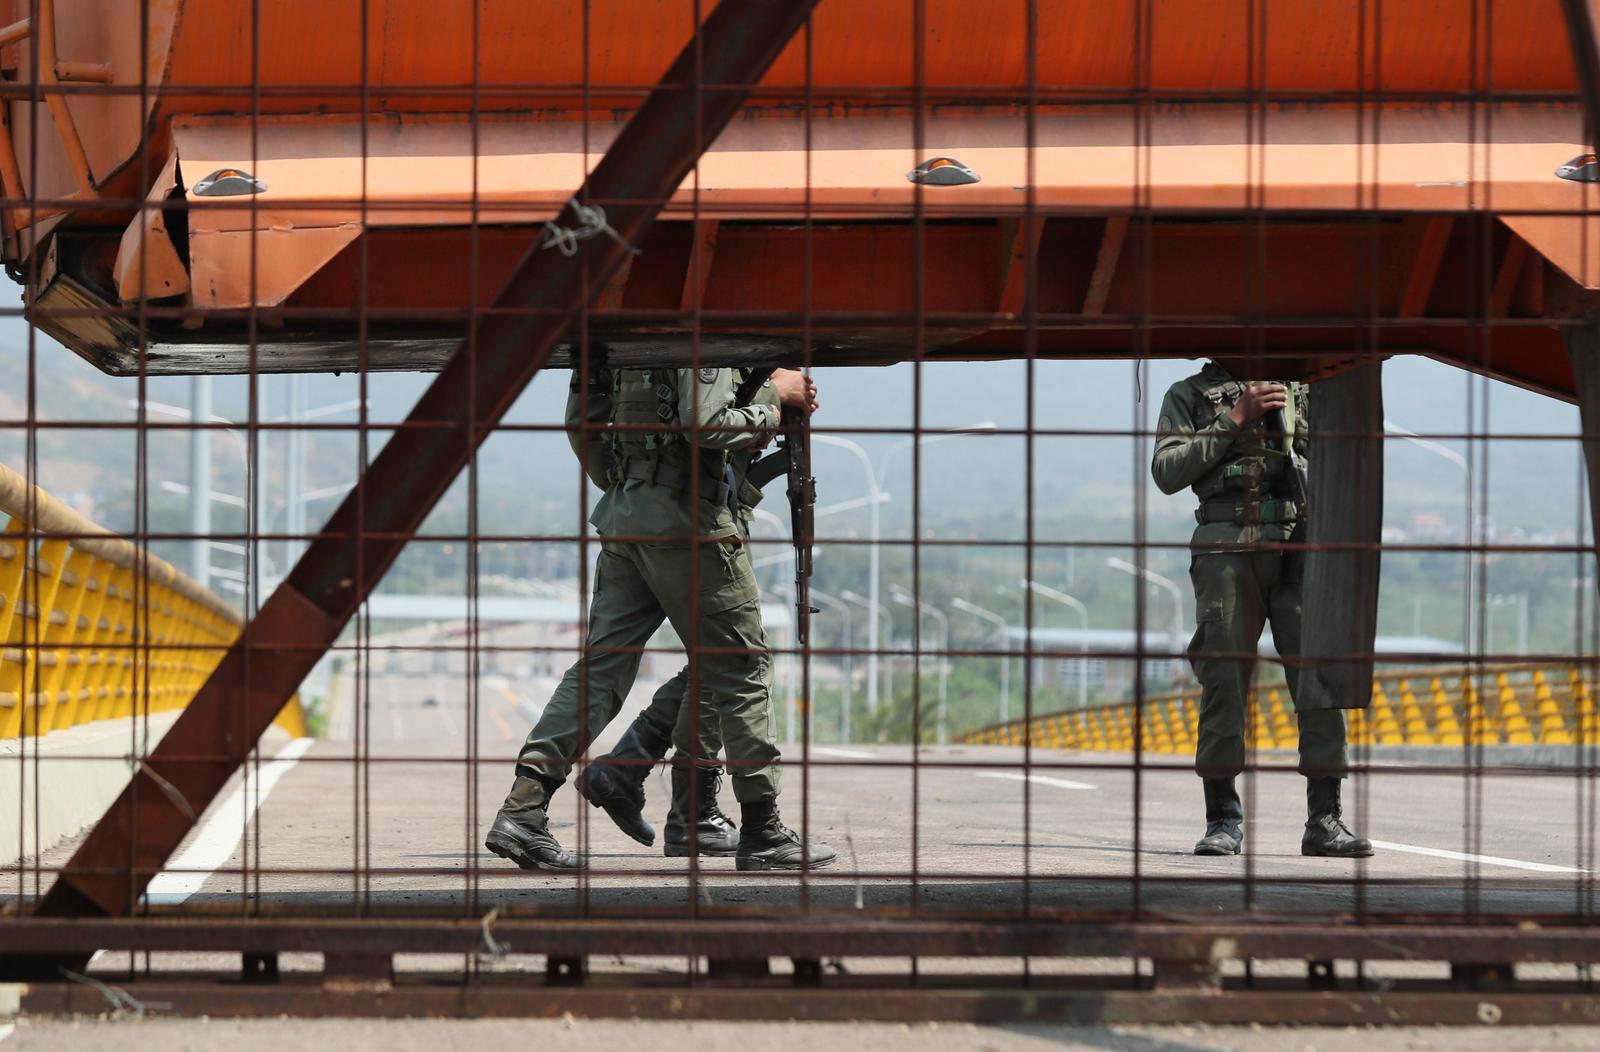 Vigilancia. Unos 20 agentes armados de la Guardia Nacional Bolivariana custodian la zona. (EFE)